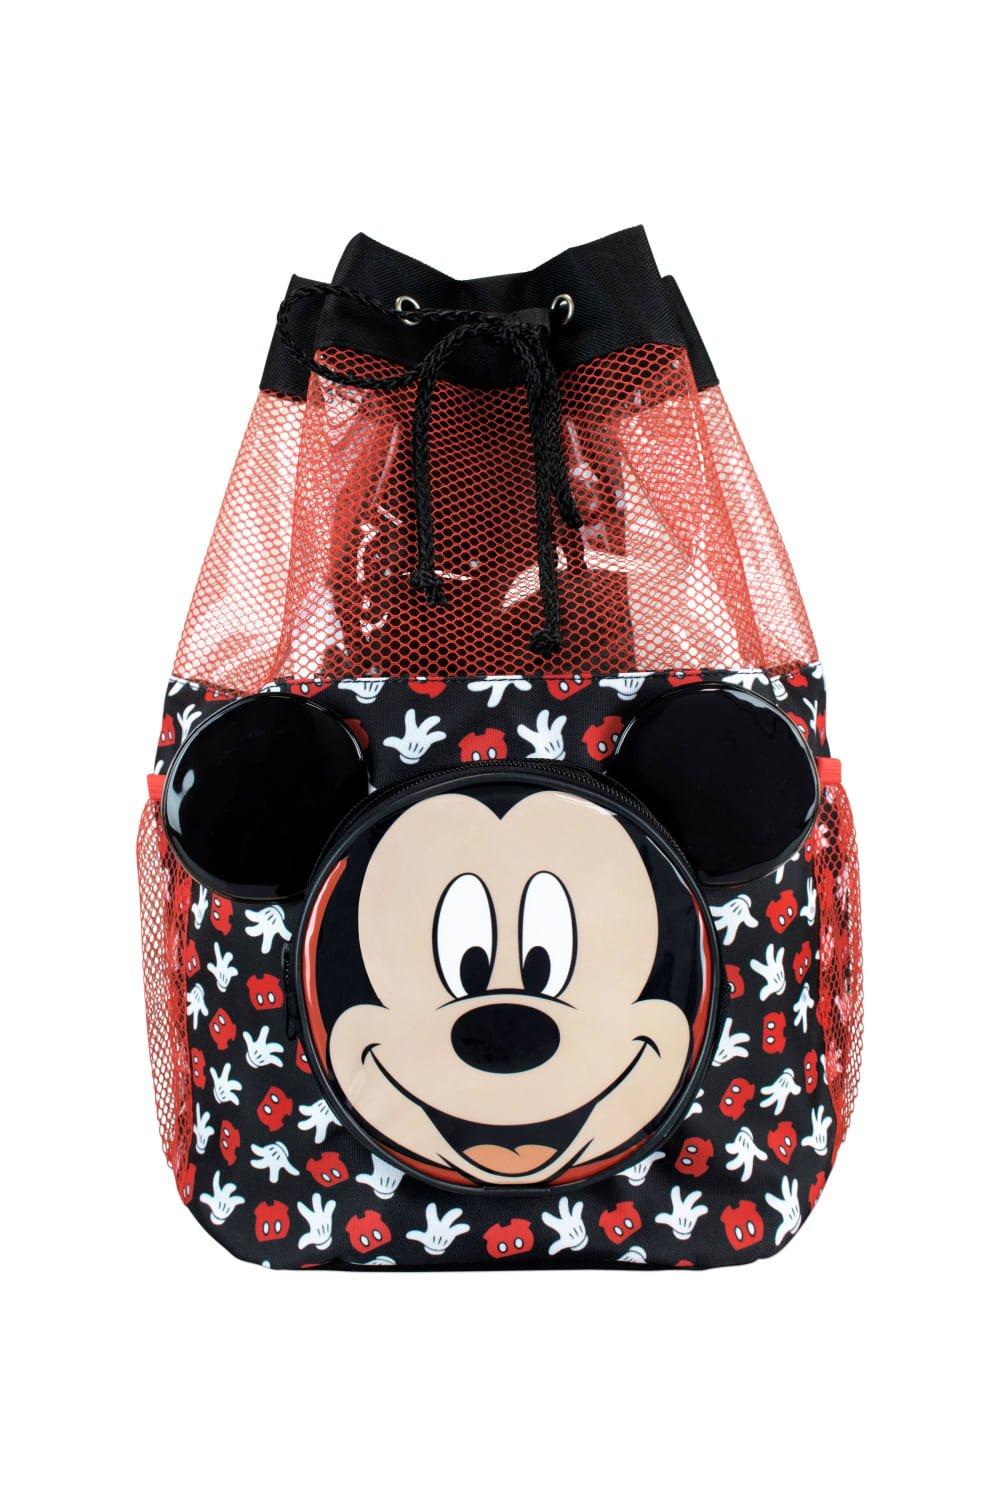 Сумка для плавания с Микки Маусом Disney, черный сумка для плавания с микки маусом disney черный